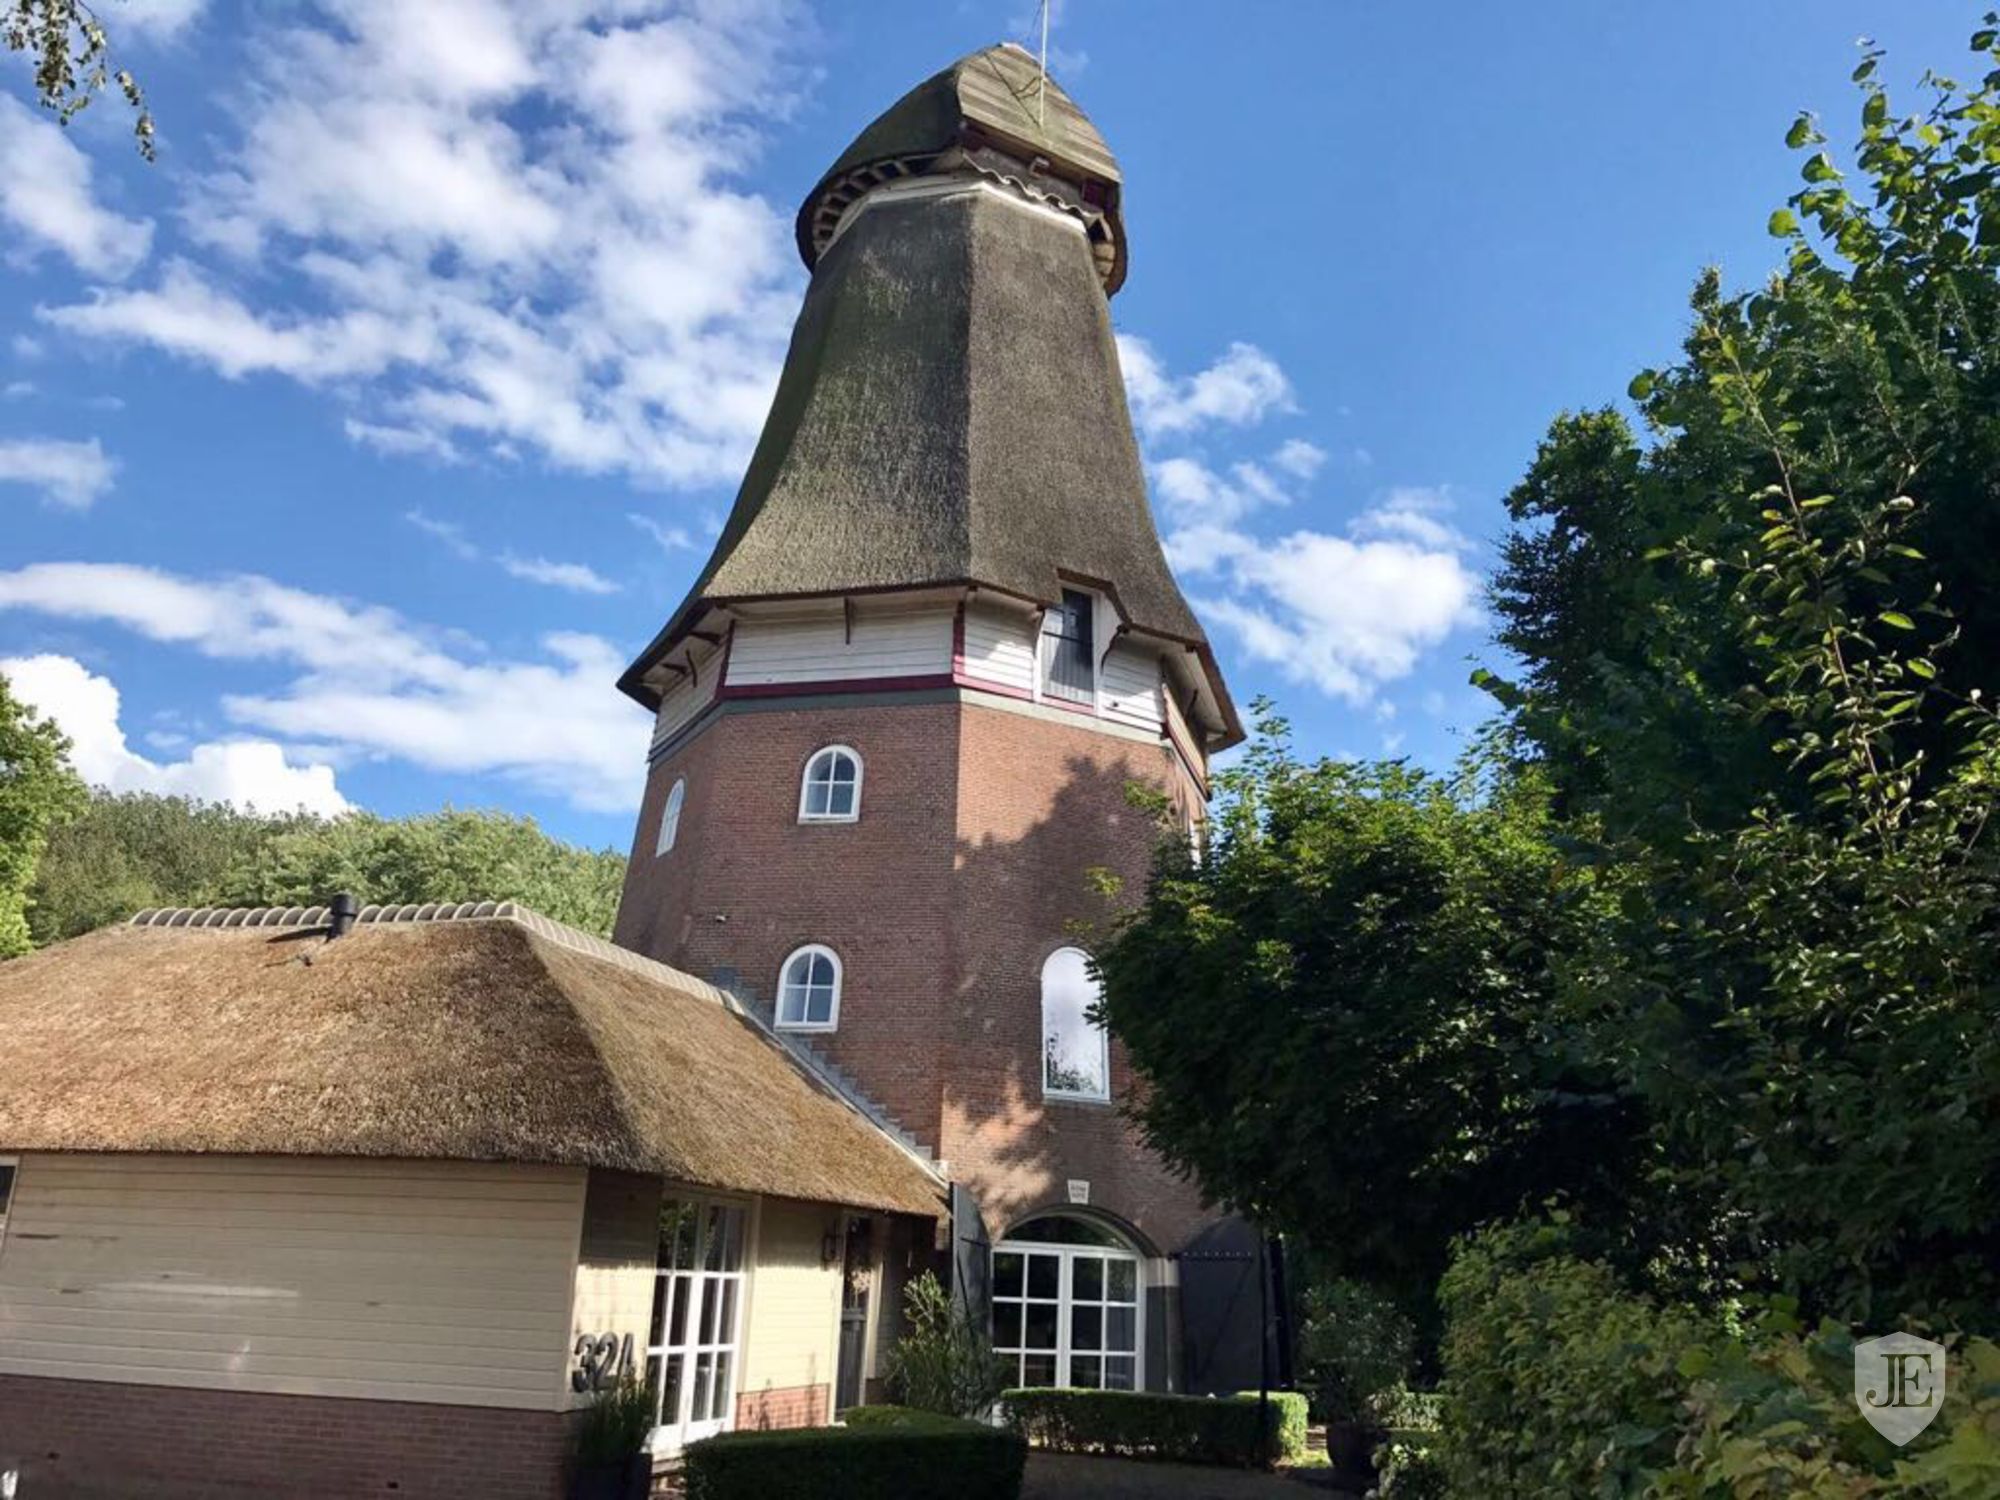 Dutch Windmill De Jonge Gerrit in Wijhe Netherlands for sale on ...